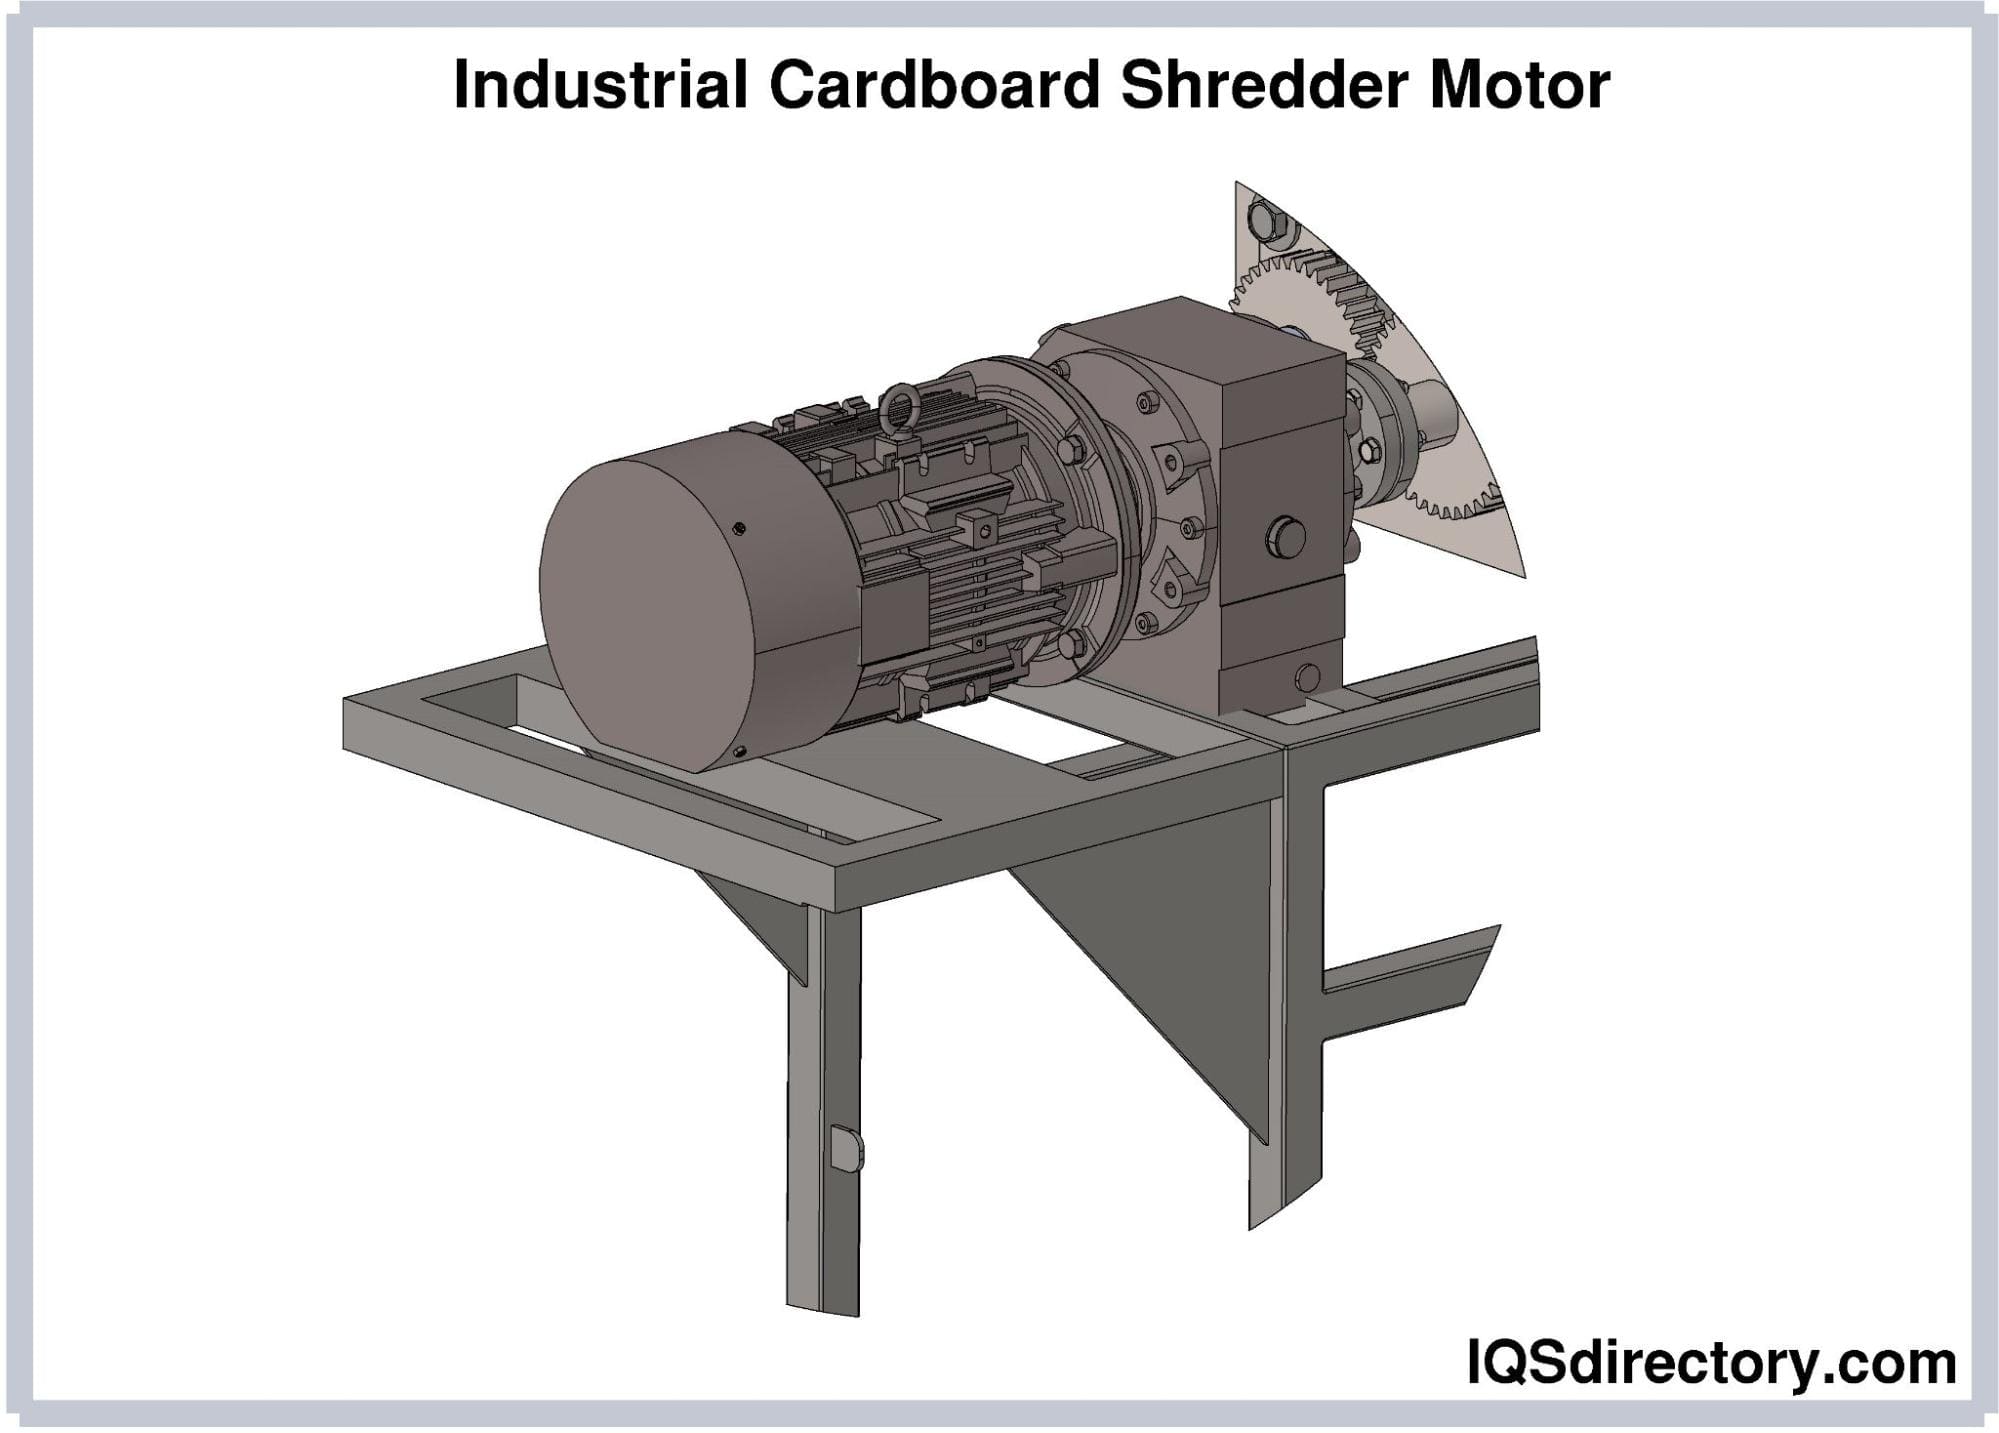 Industrial Cardboard Shredder Motor